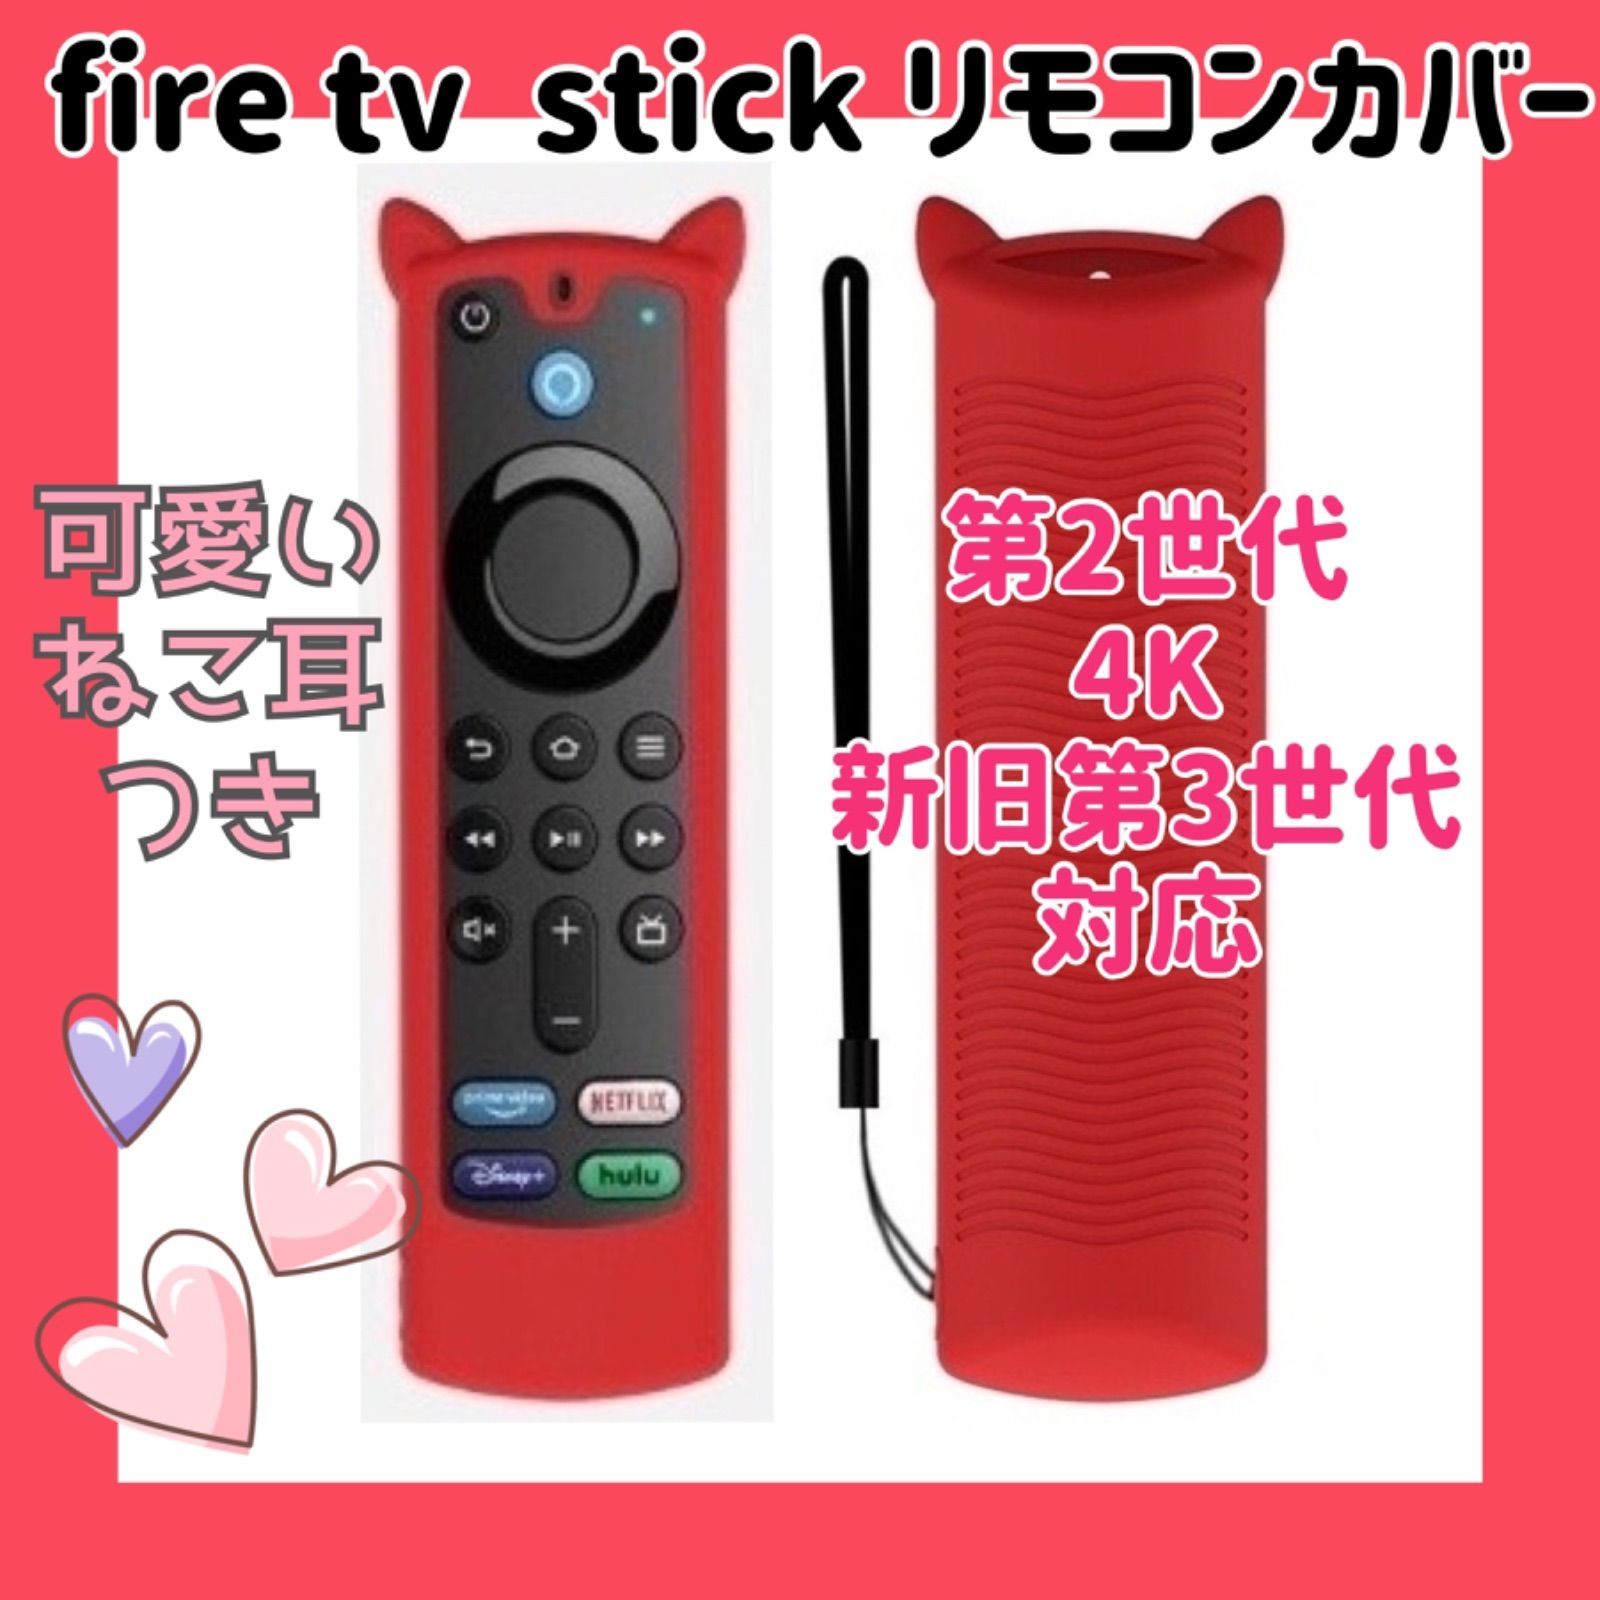 可愛いネコ耳付き】fire tv stick リモコンカバー 【レッド】 - メルカリ